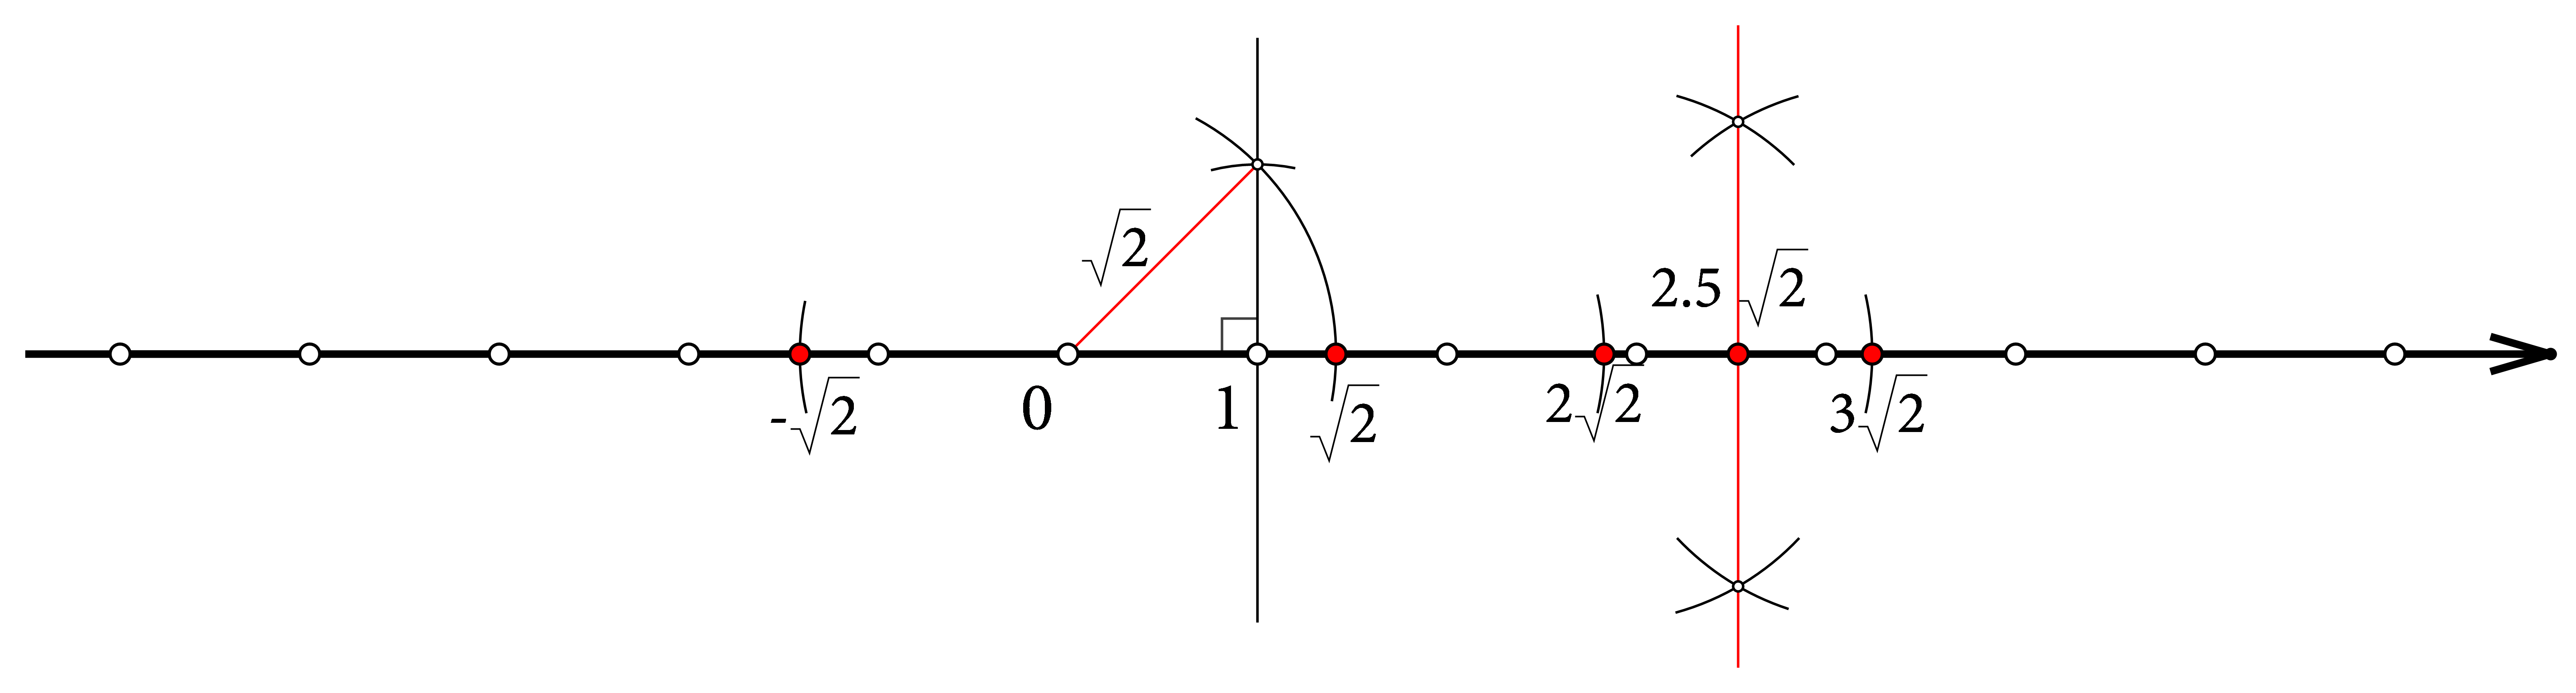 Prikaz konstrukcija točaka sa zadanim koordinatama iz zadatka prema opisima iz rješenja.